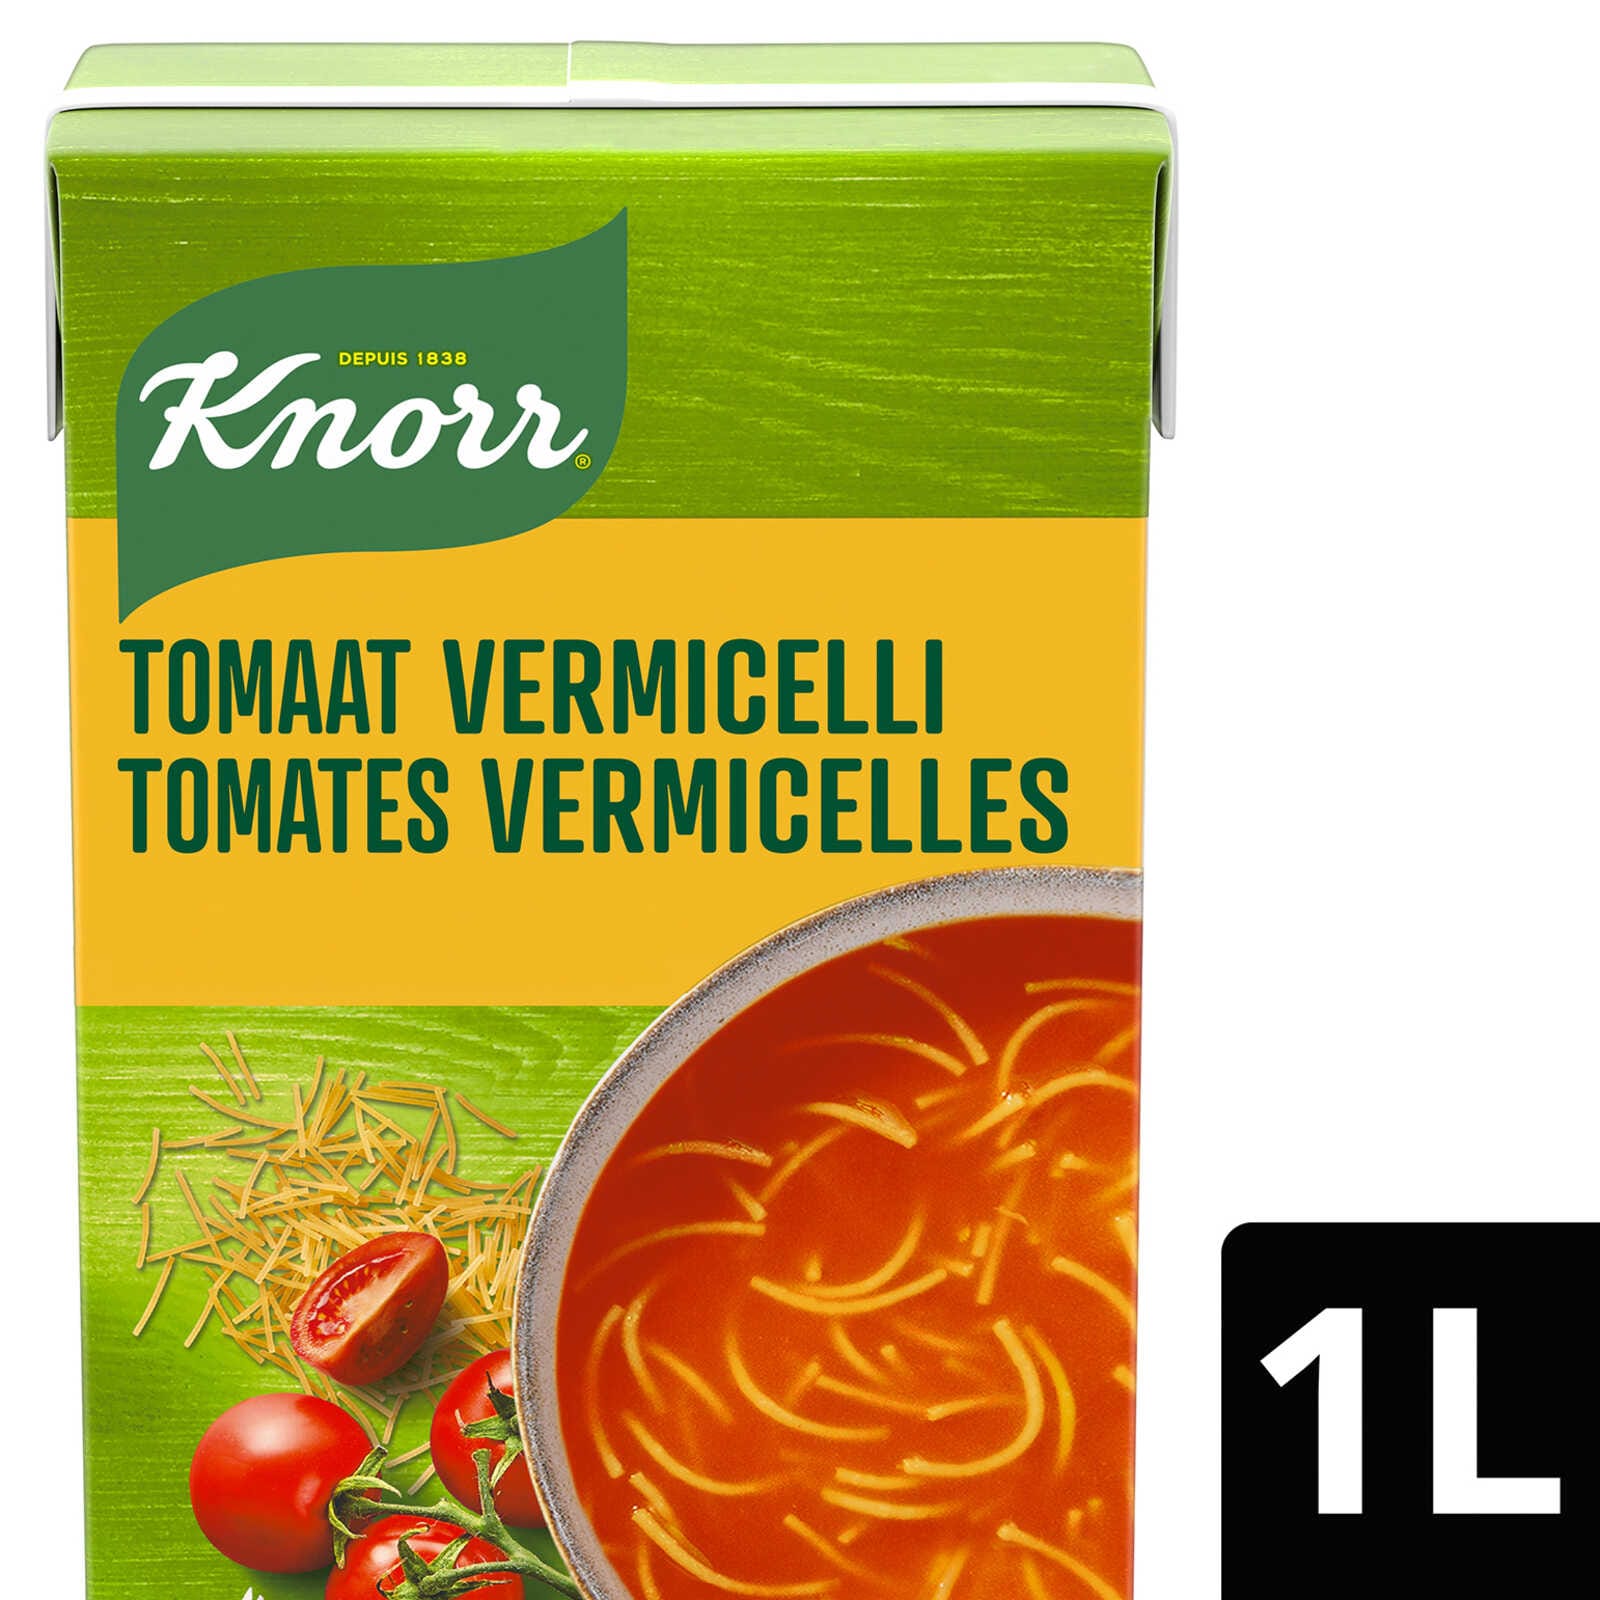 Potage de tomates aux vermicelles déshydraté, knorr (4 portions